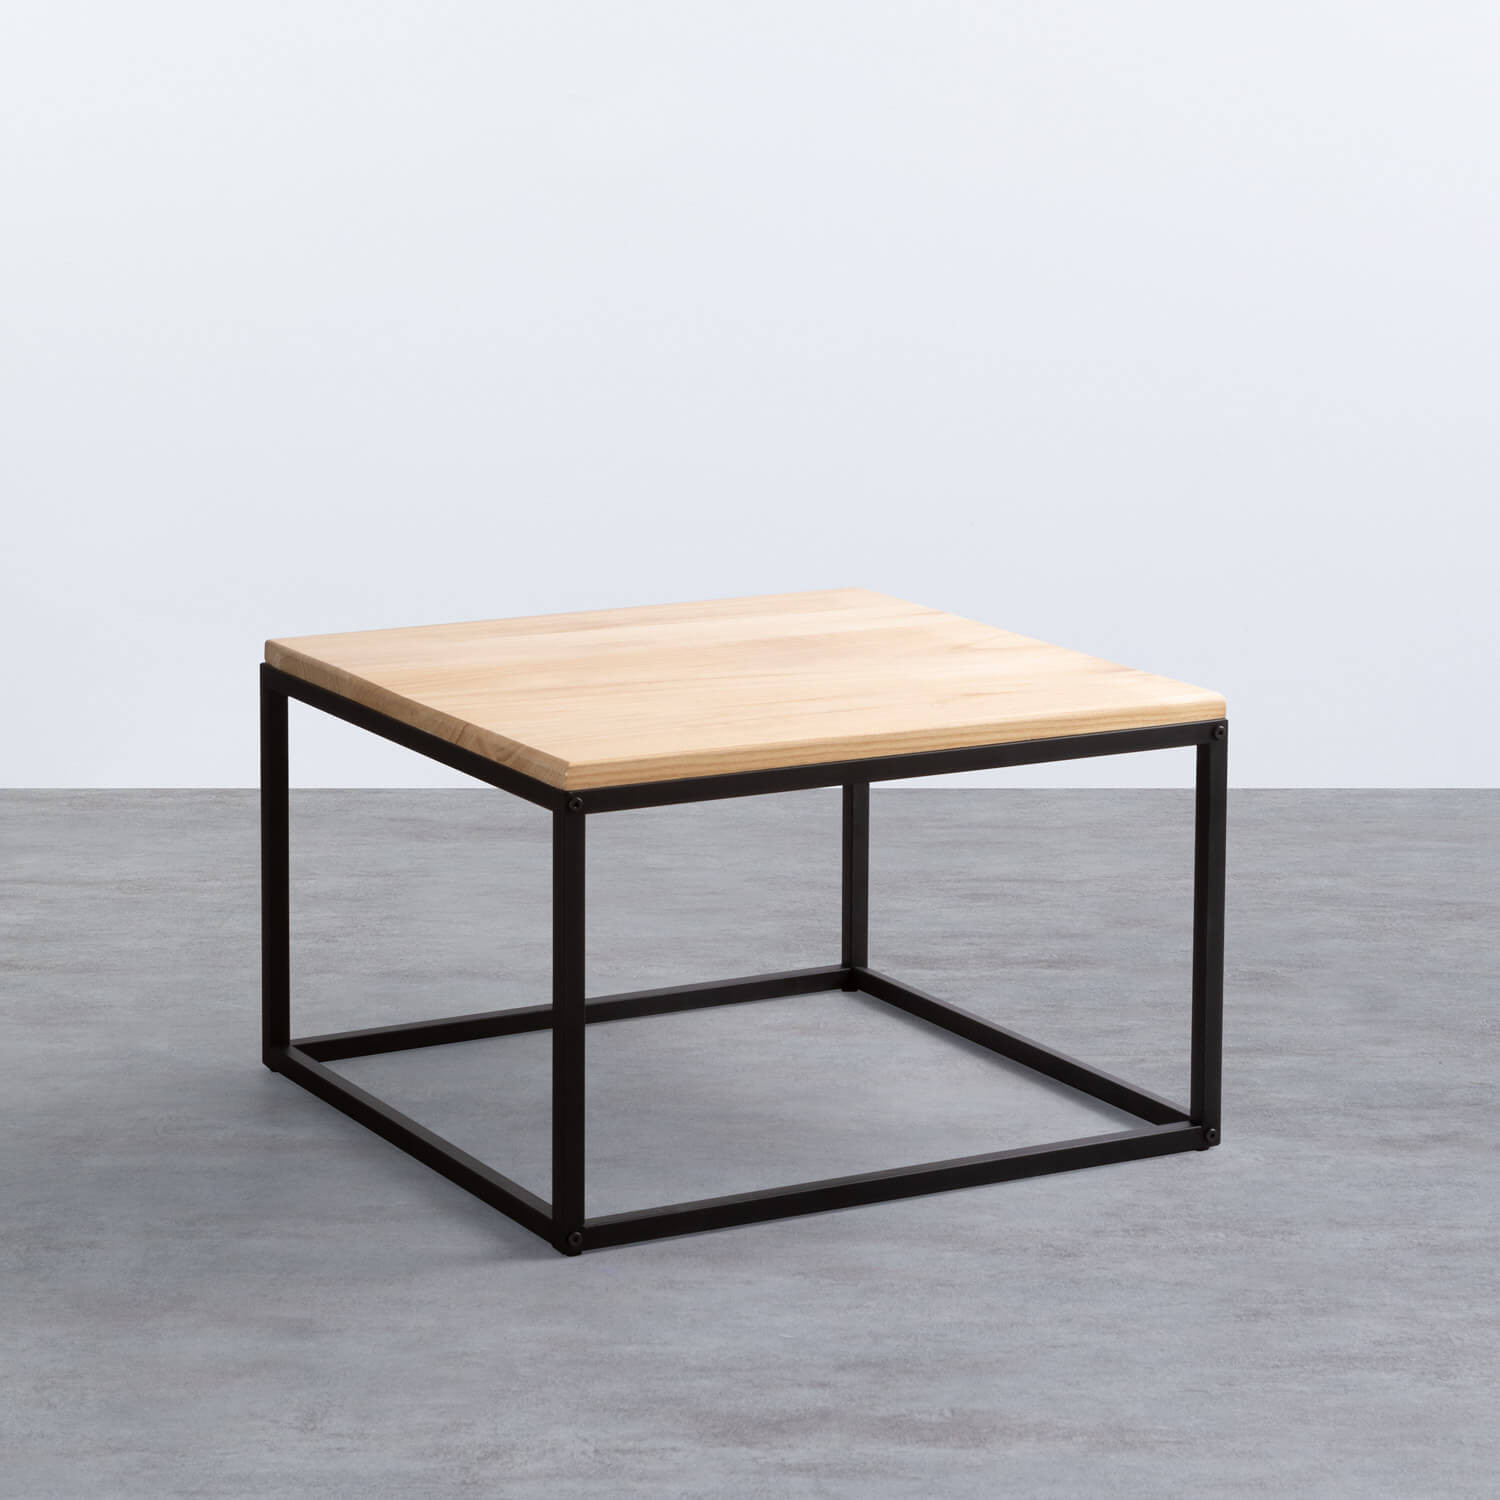 Tavolino da Caffé Quadrato in Legno e Metallo (60x60 cm) Ferro, immagine della galleria 1